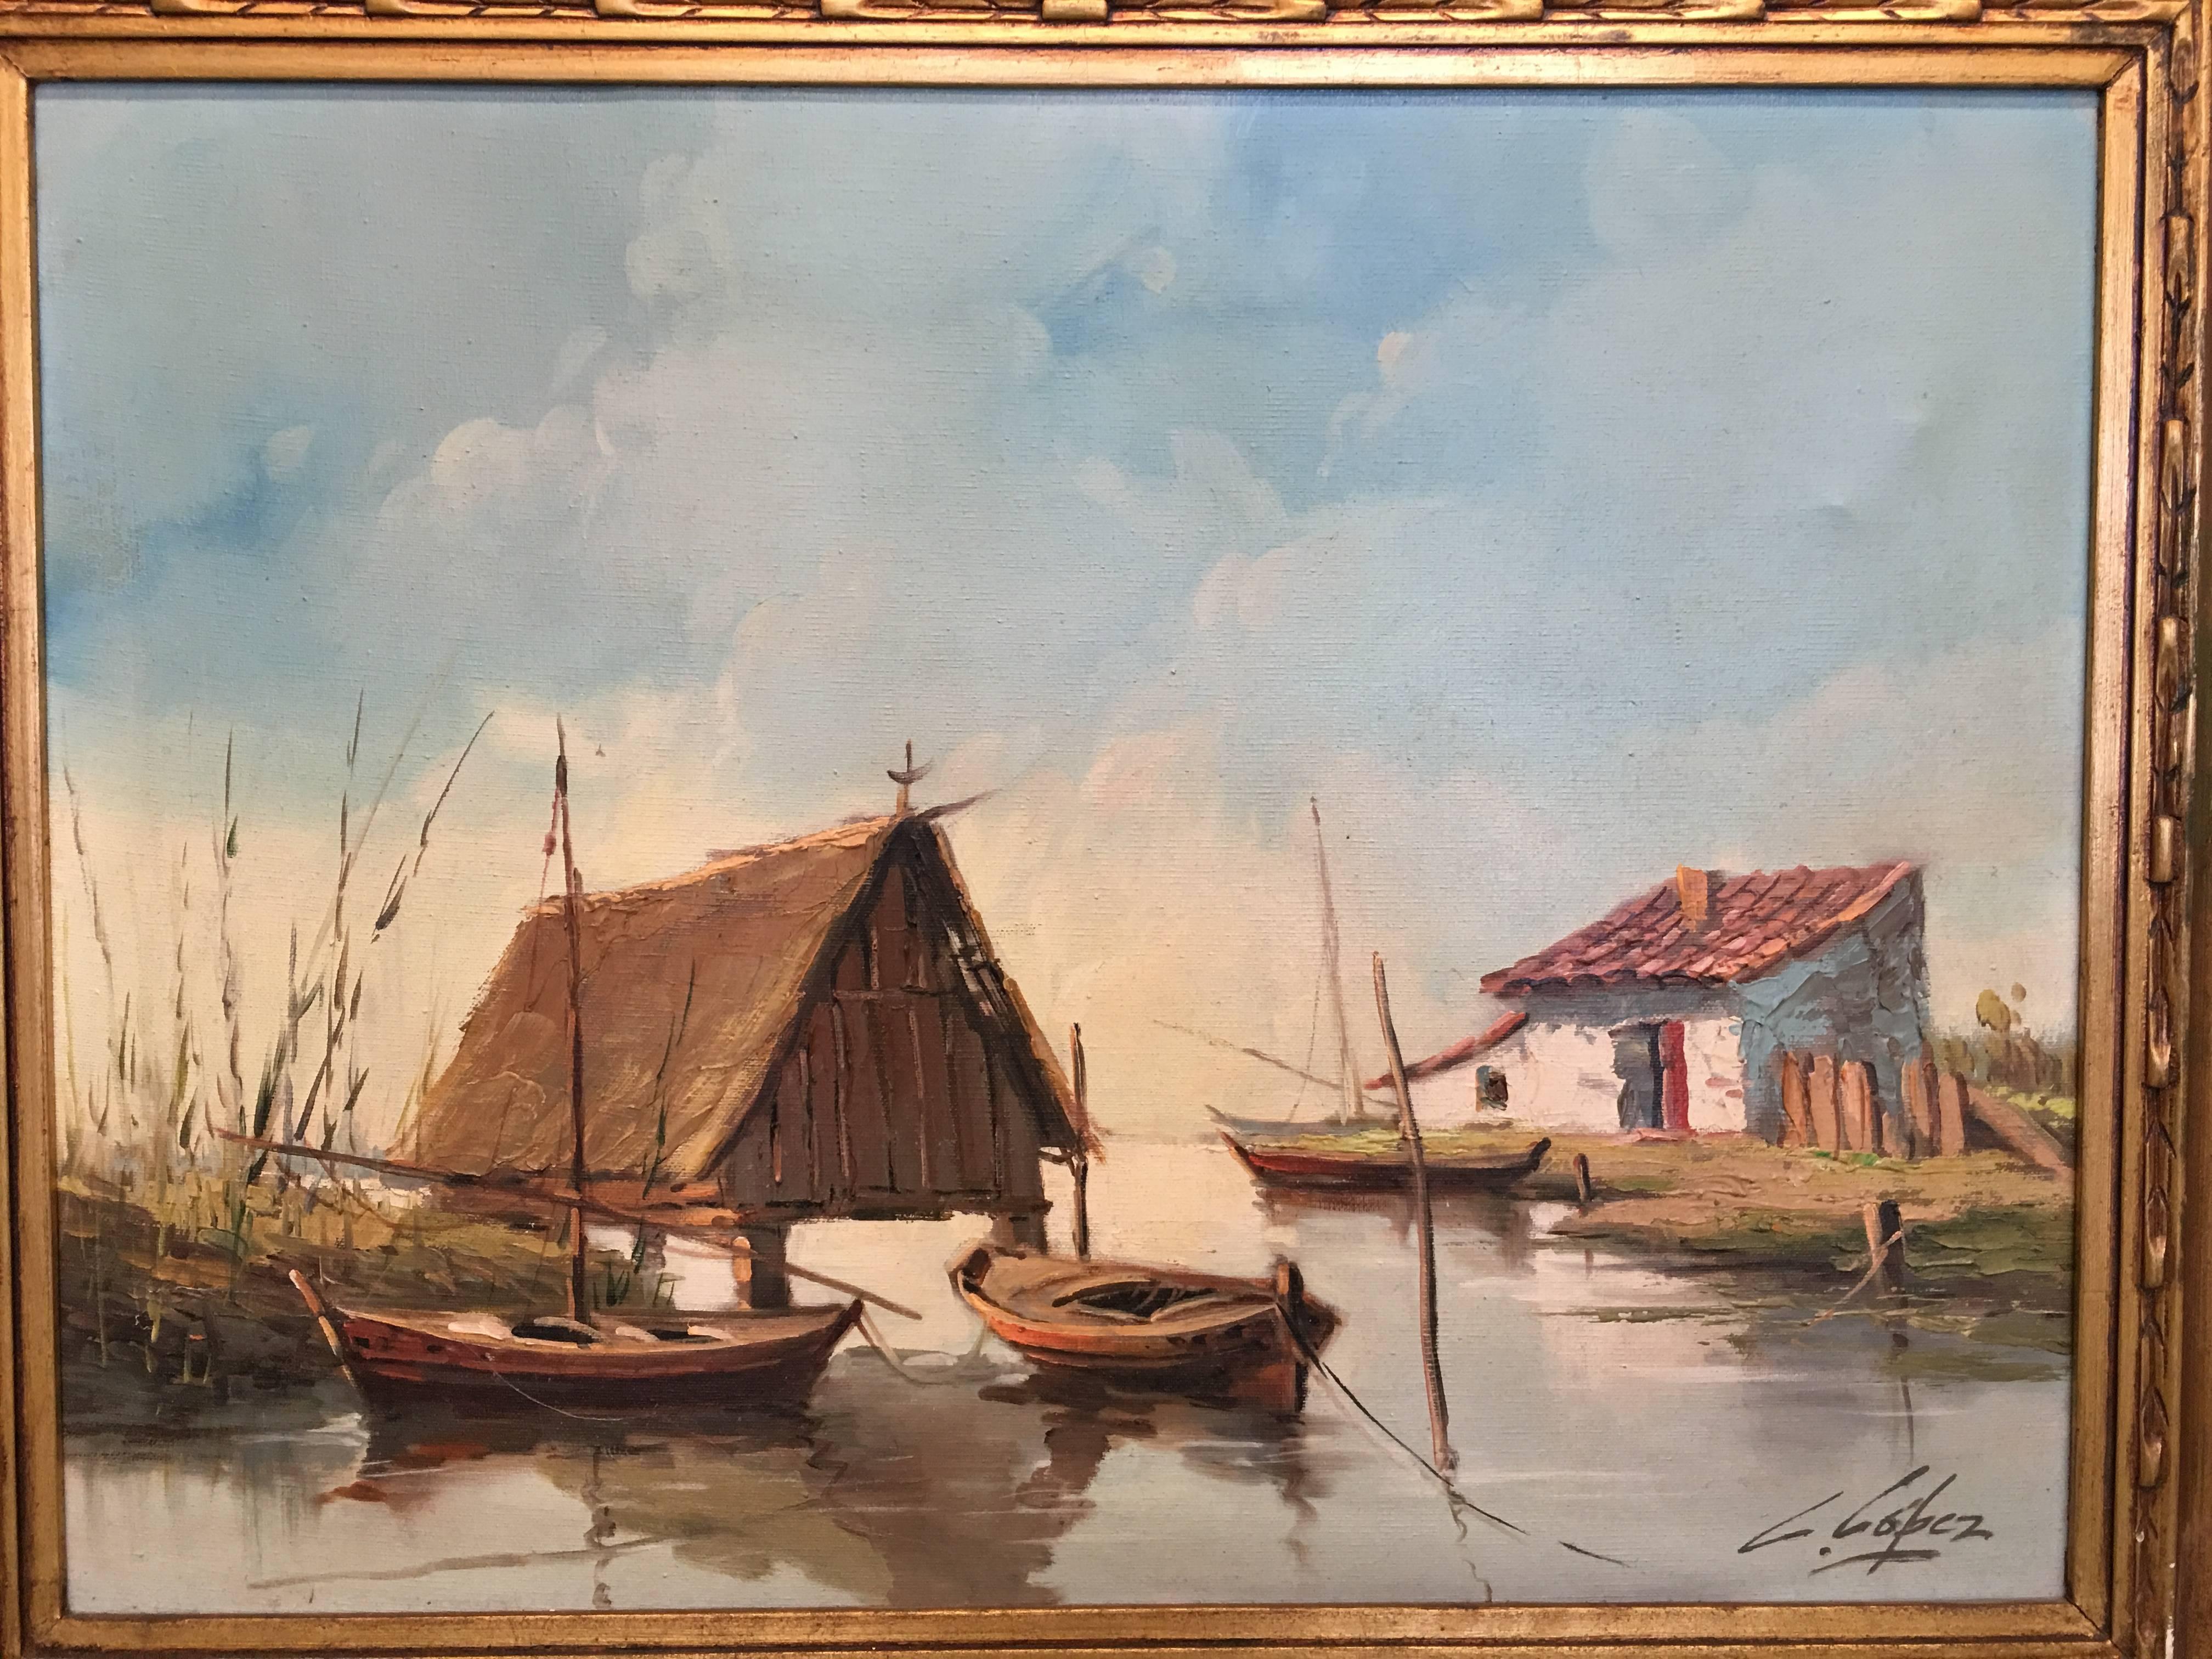 1950 huile sur toile, La lagune, Valence, Espagne signé par Lopez avec un beau cadre
Paysage traditionnel de Valence appelé 